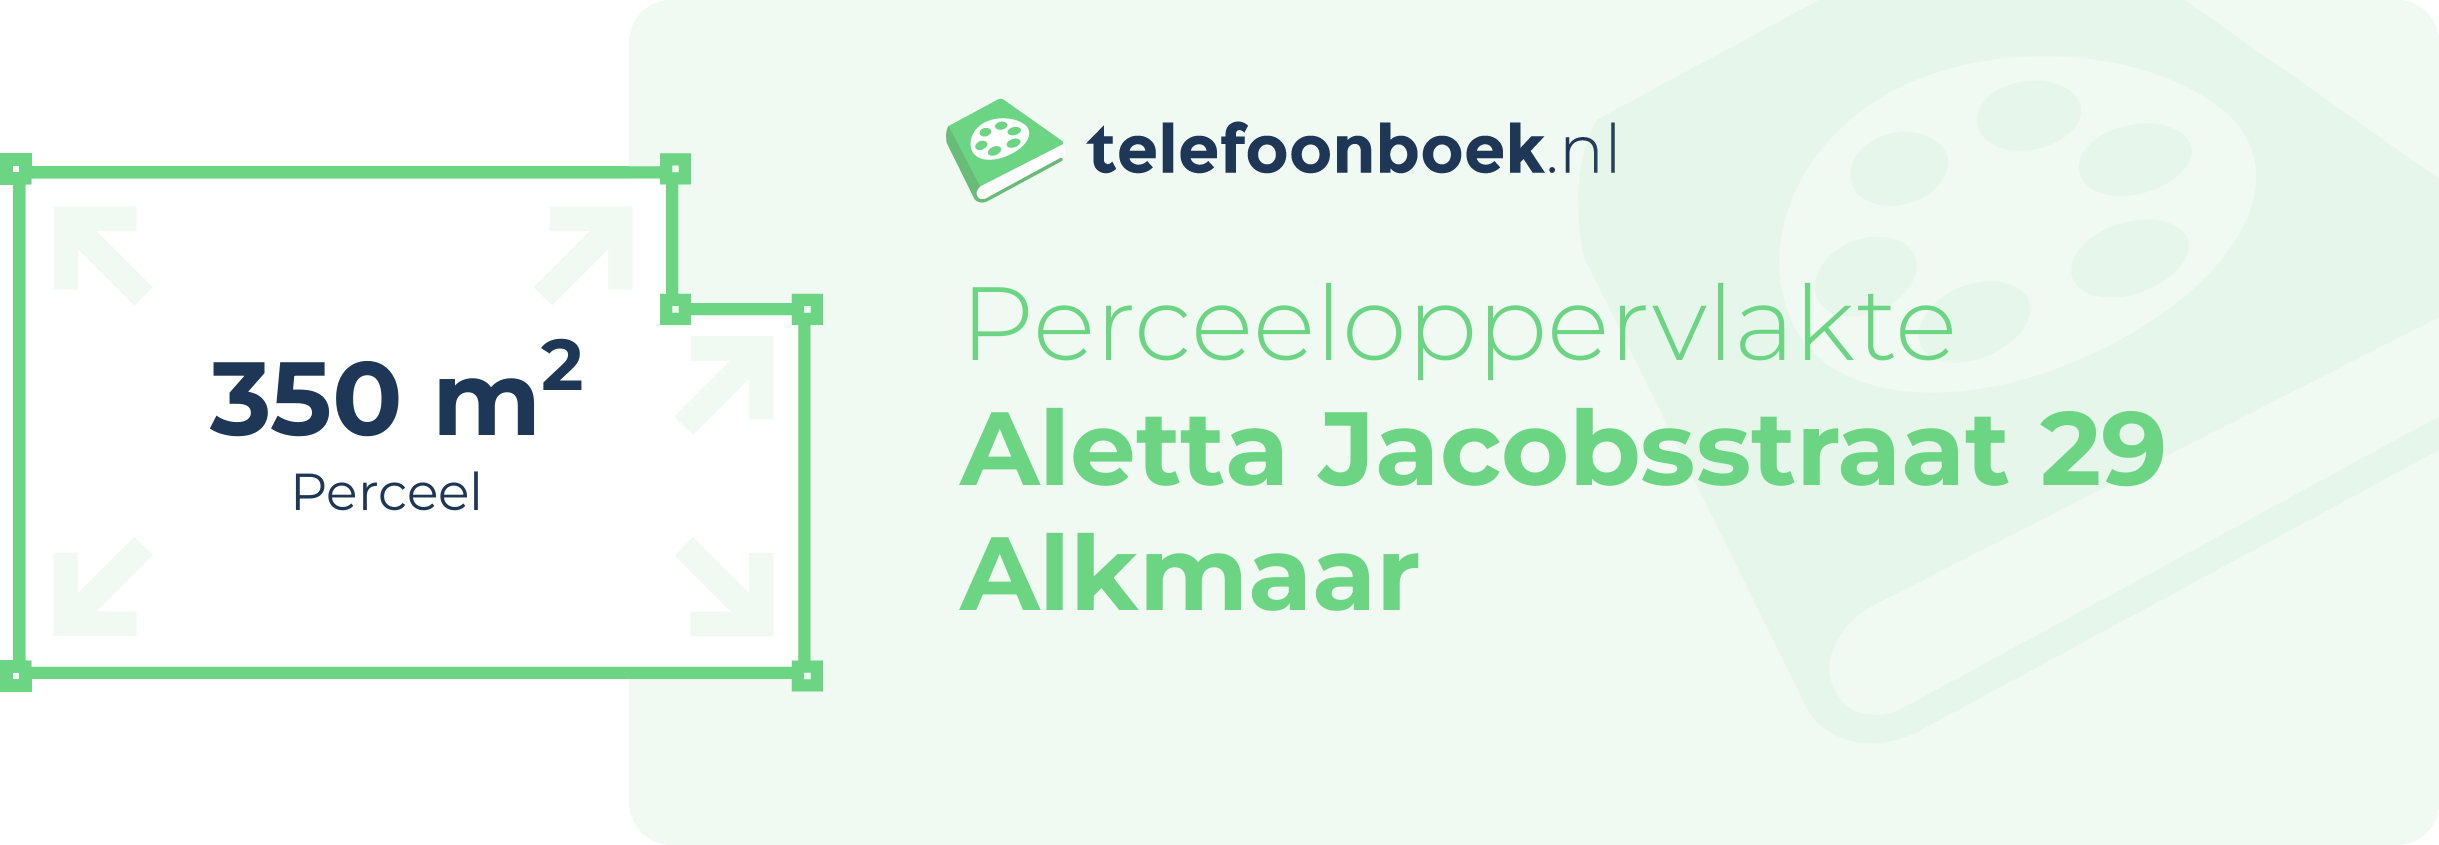 Perceeloppervlakte Aletta Jacobsstraat 29 Alkmaar